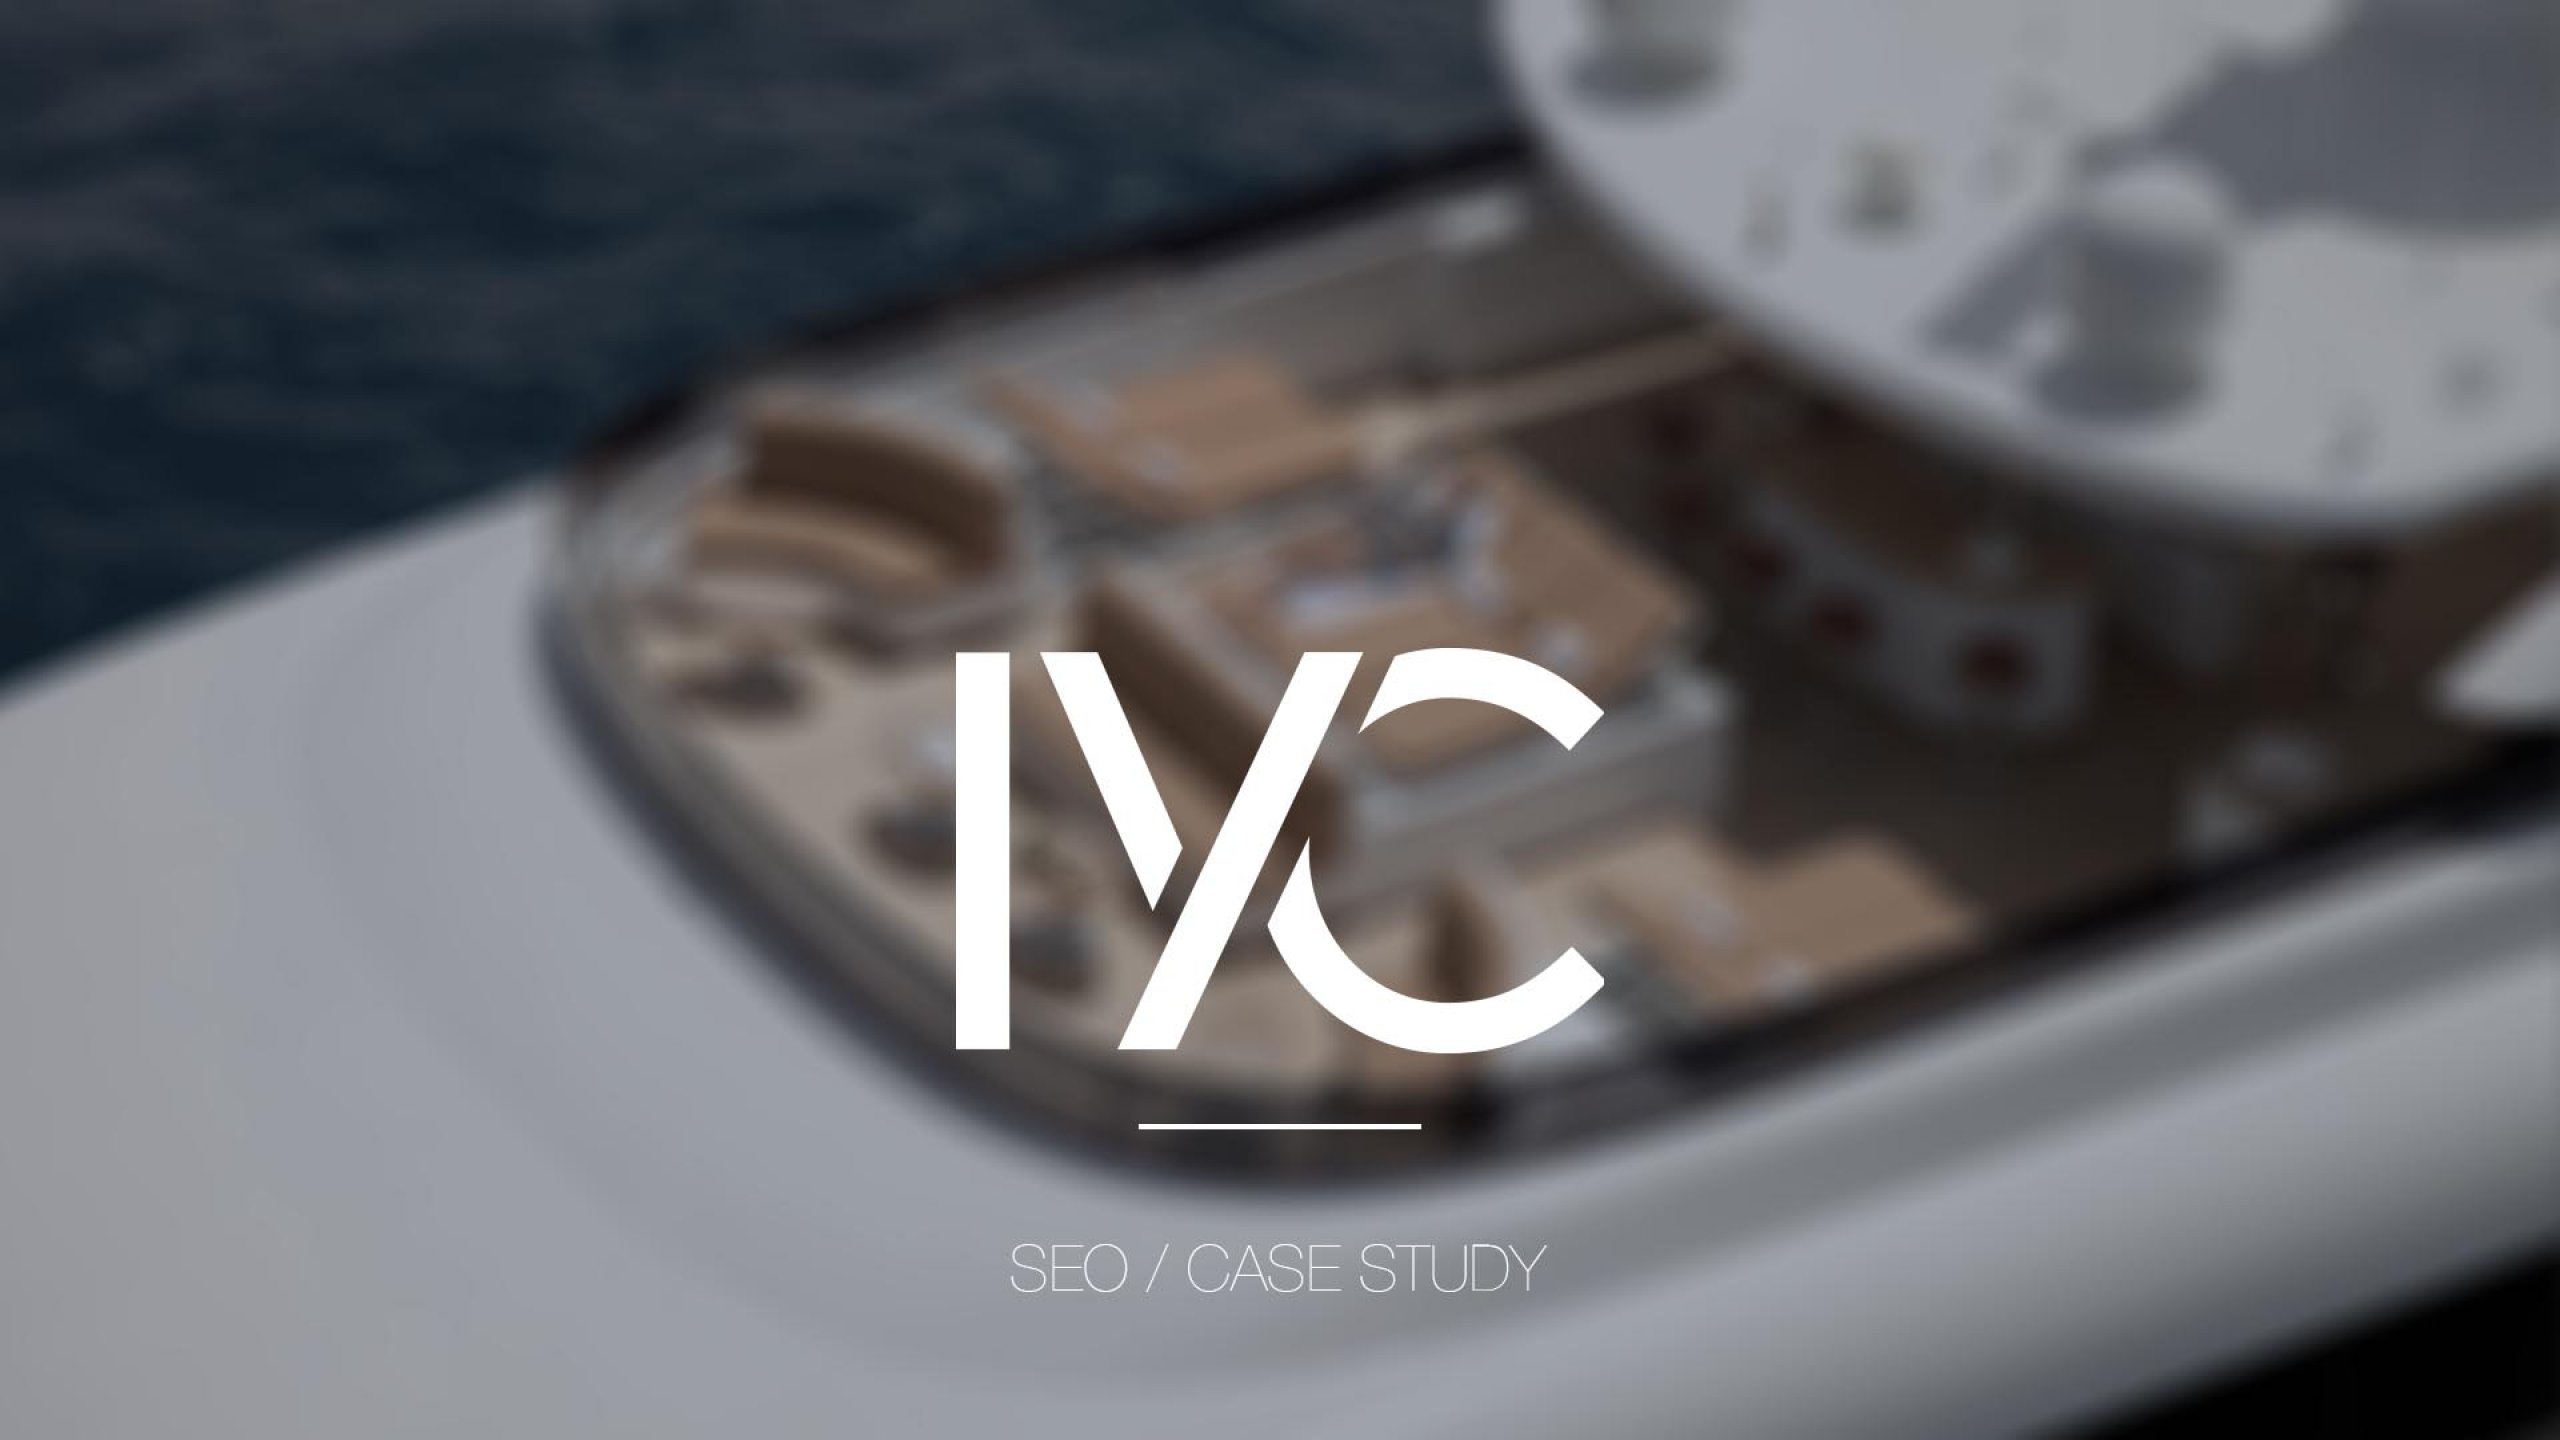 IYC SEO Case Study